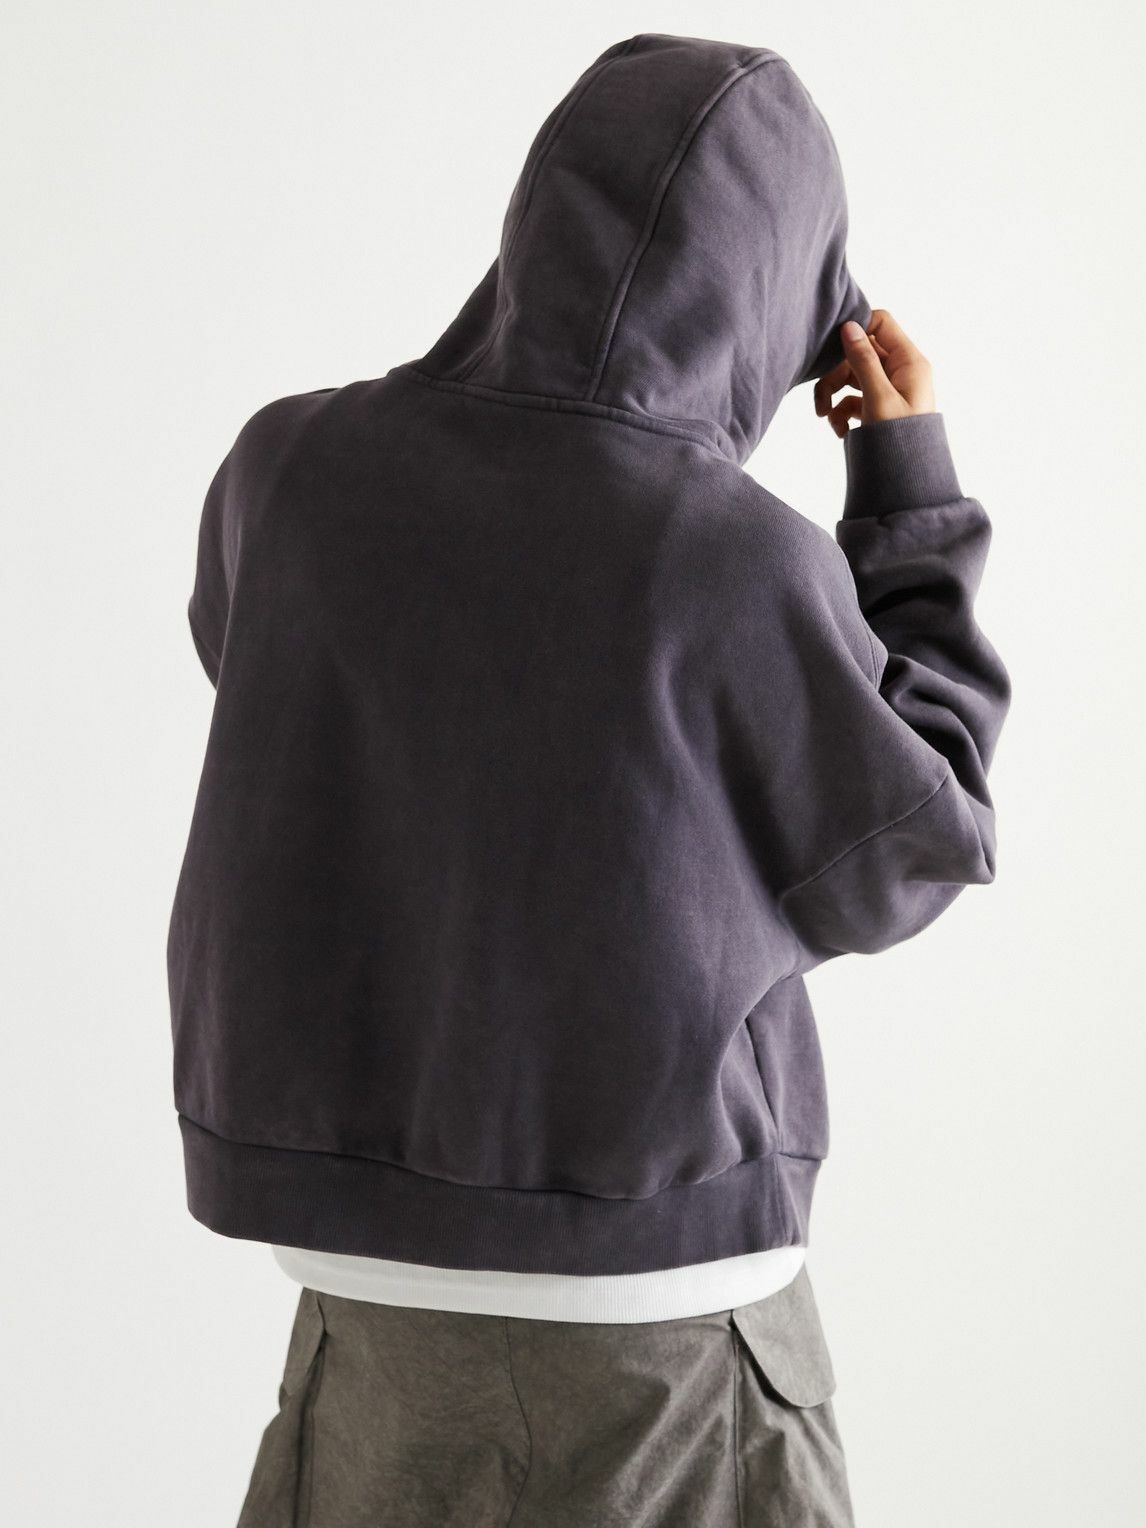 alyxentire studios zipped hoodie